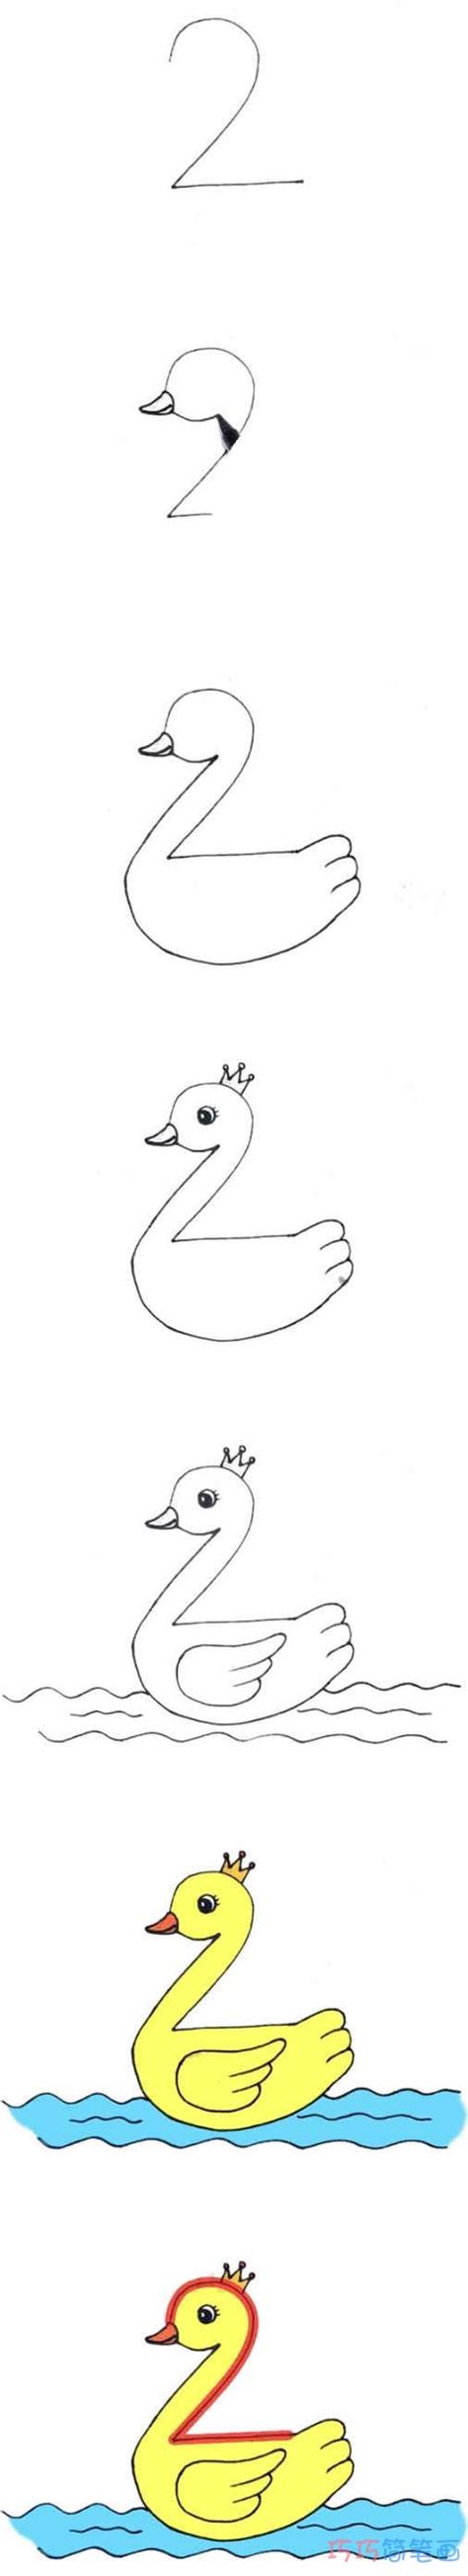 数字2小鸭子的画法步骤图填色 小鸭子简笔画图片 - 巧巧简笔画